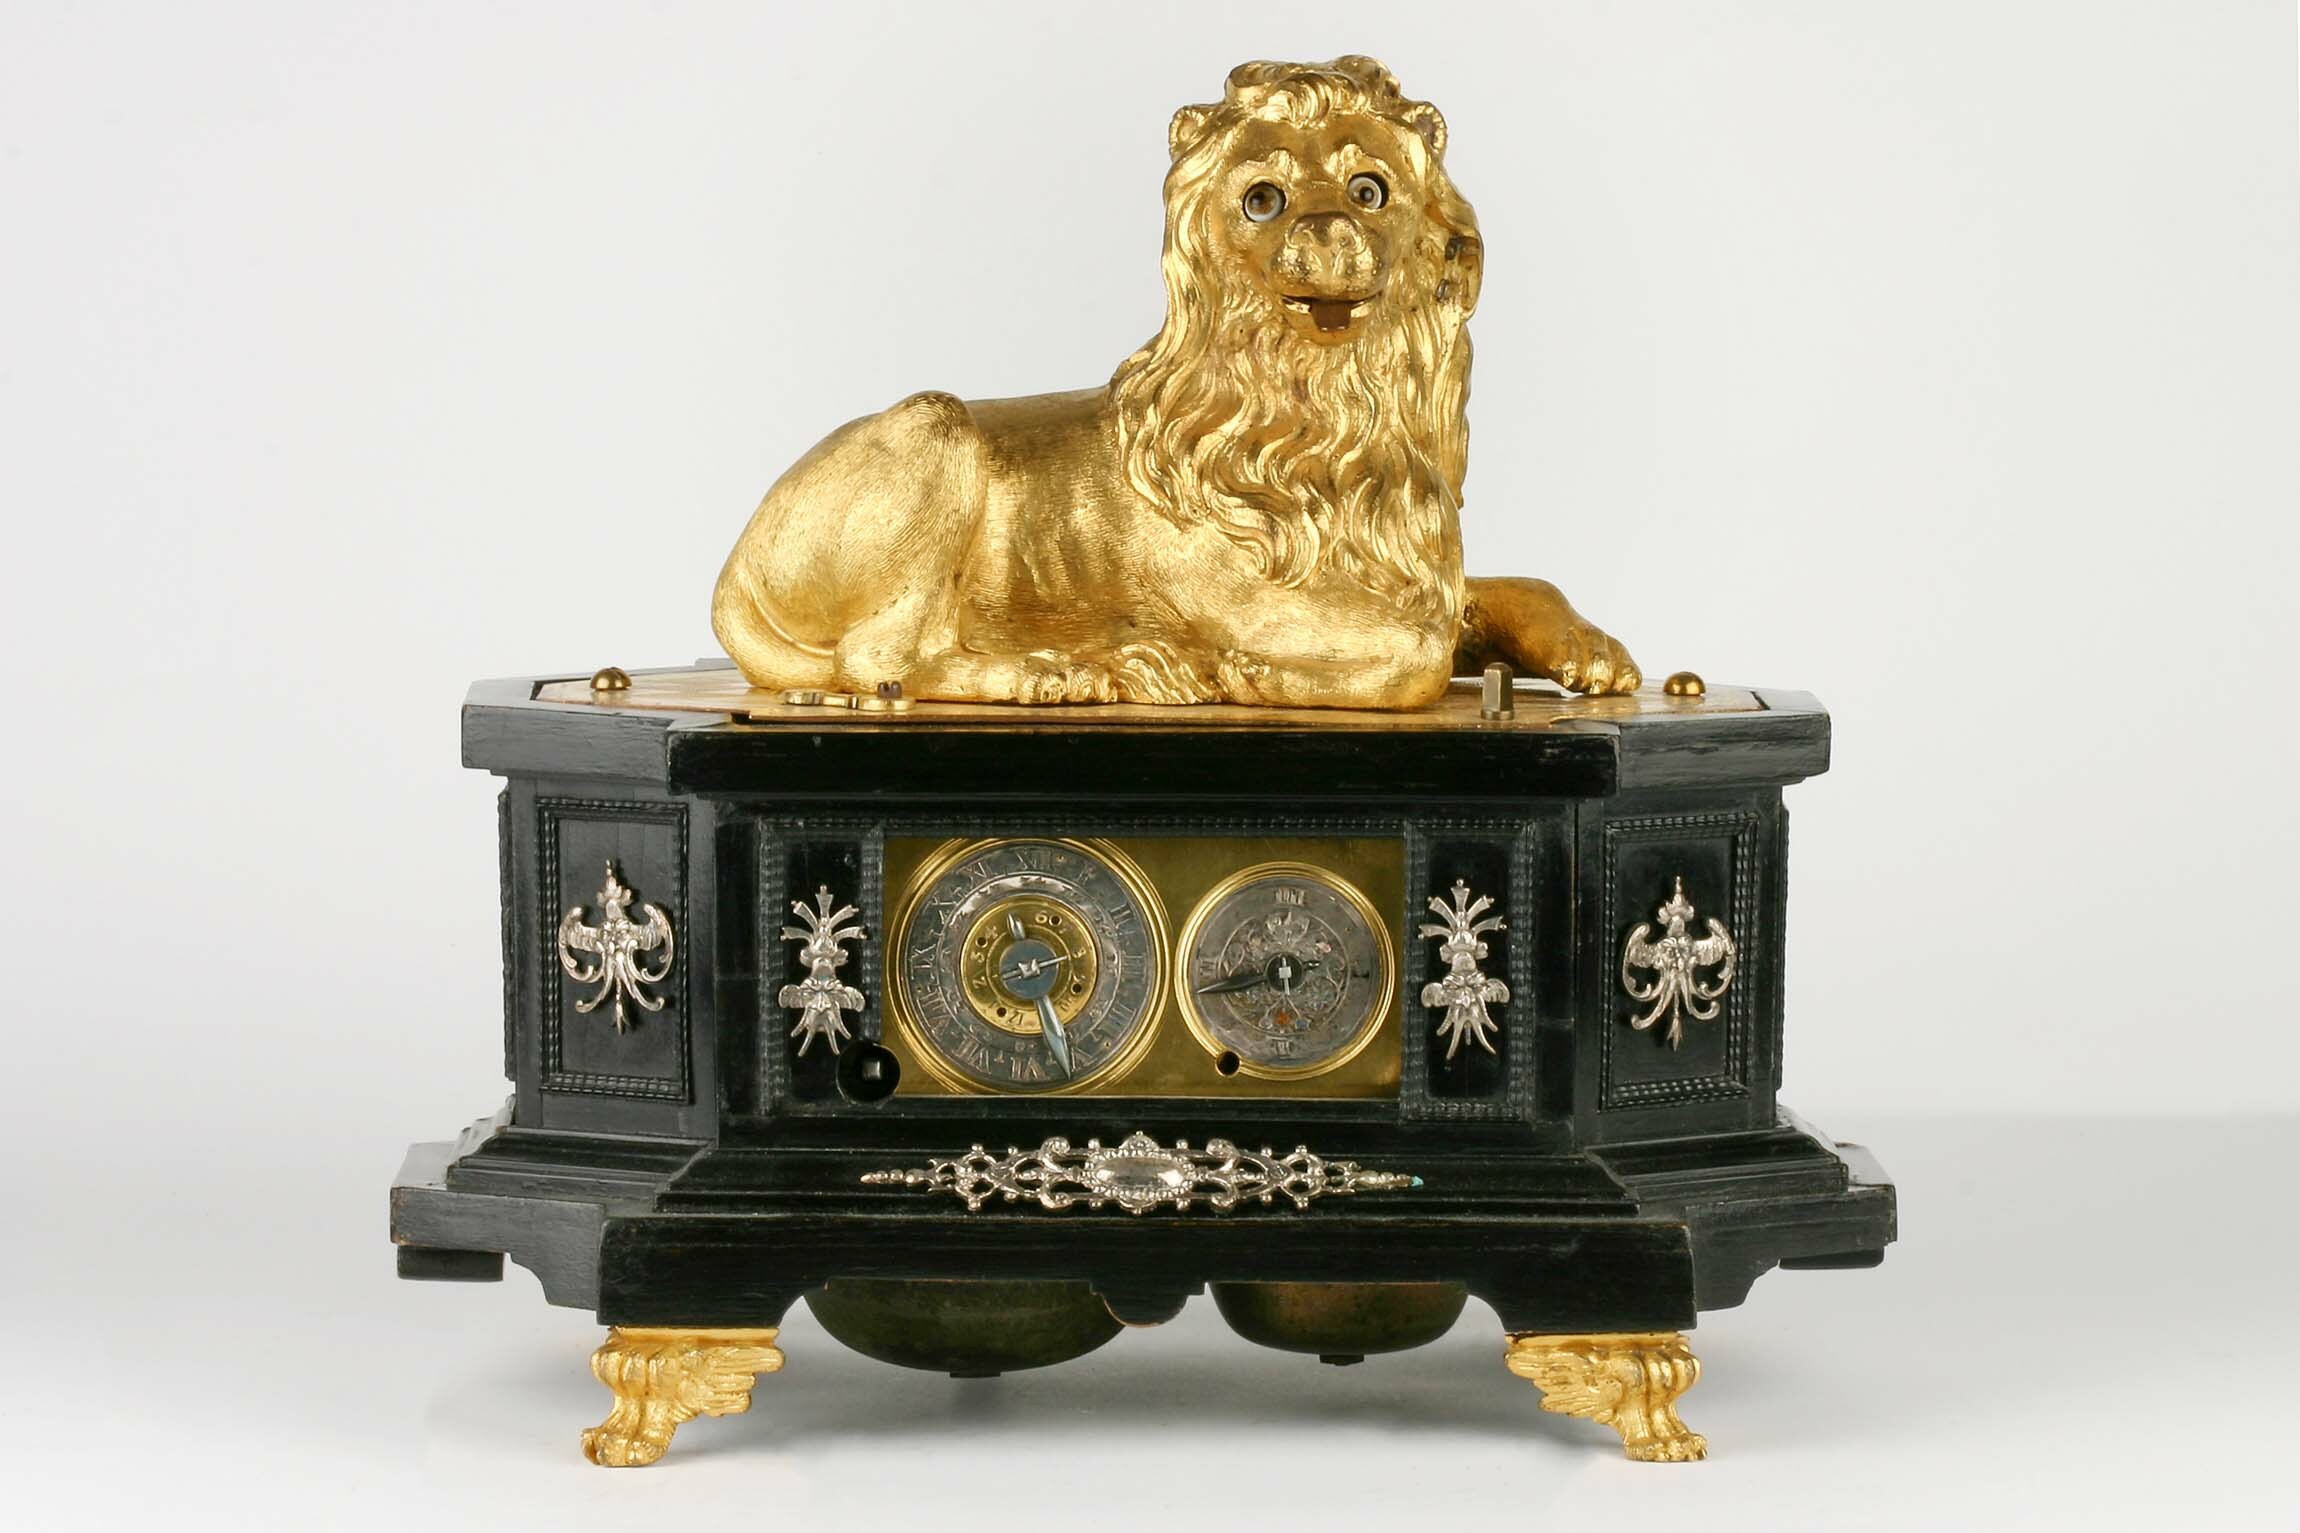 Tischuhr mit Löwenautomat, Augsburg, um 1630 (Deutsches Uhrenmuseum CC BY-SA)